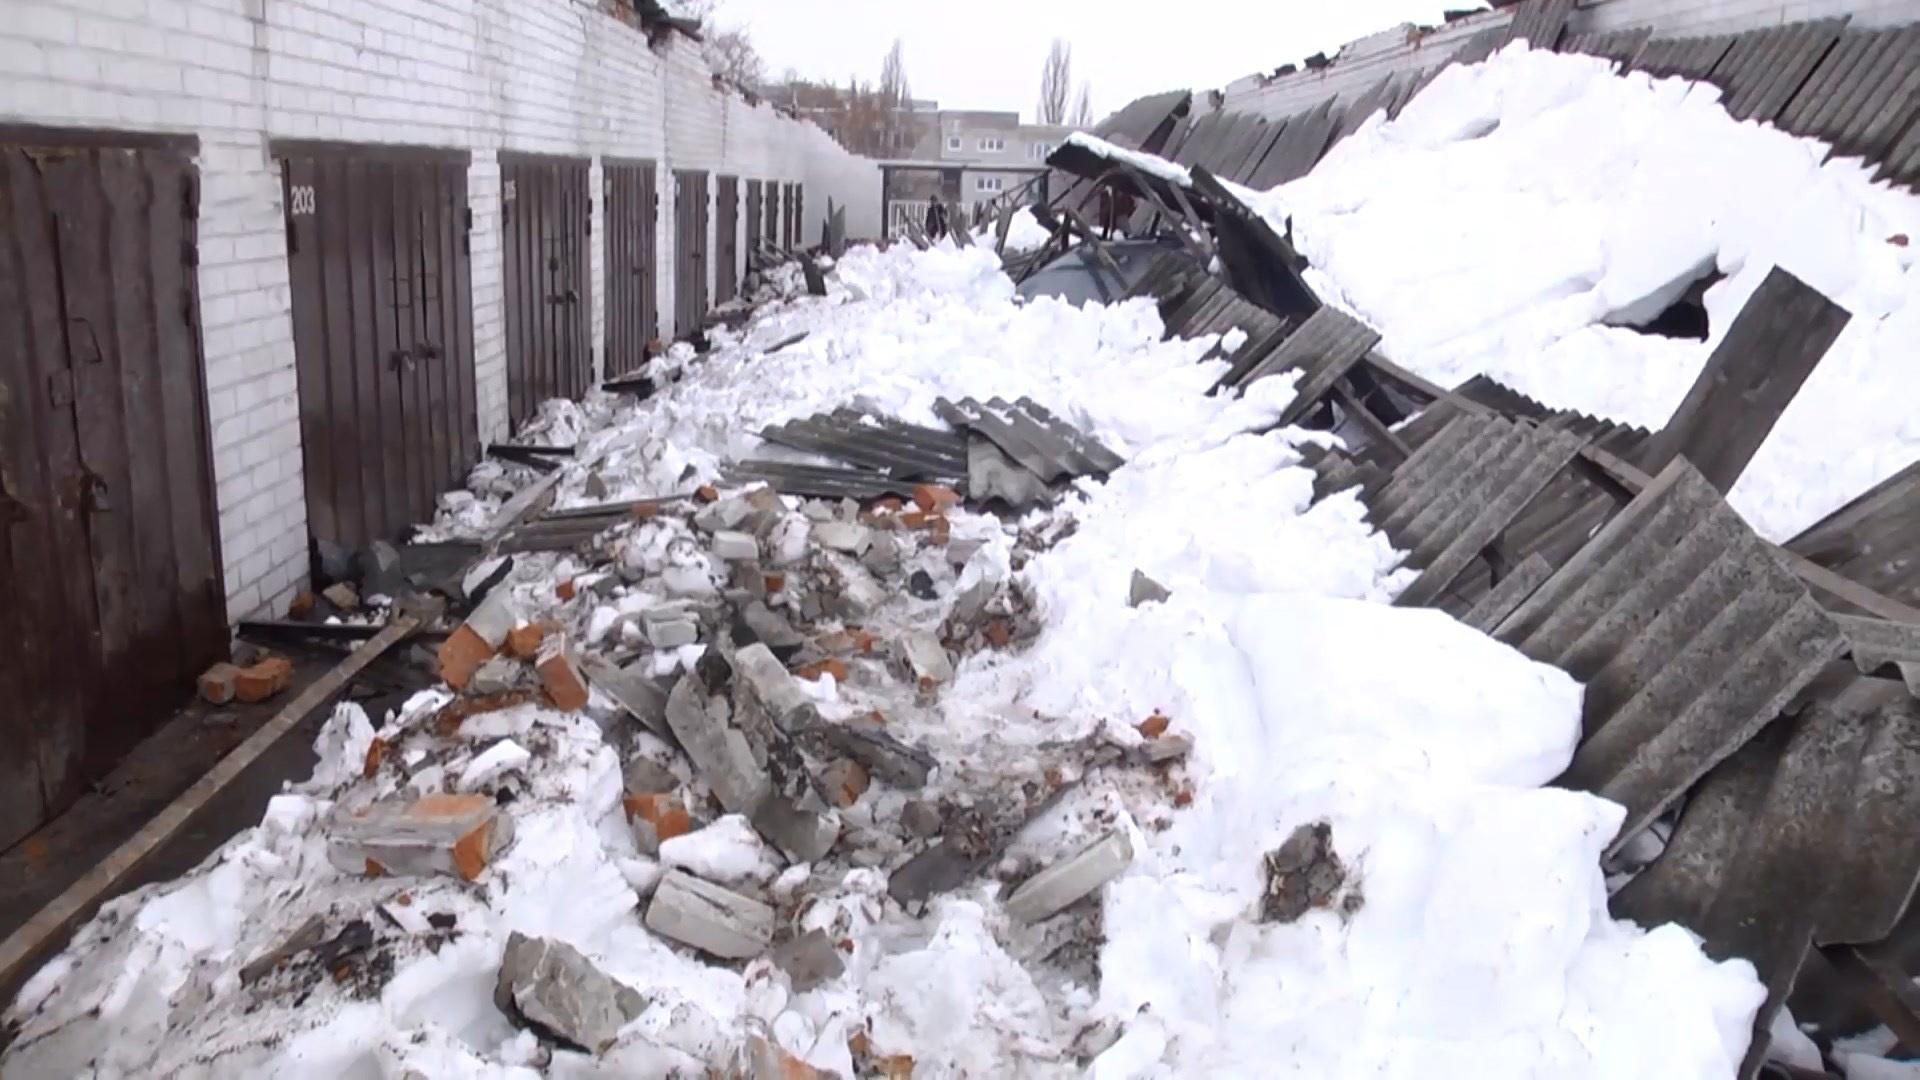 Ужасный обвал крыши со снегом произошел в Харькове, есть пострадавшие: фото и видео